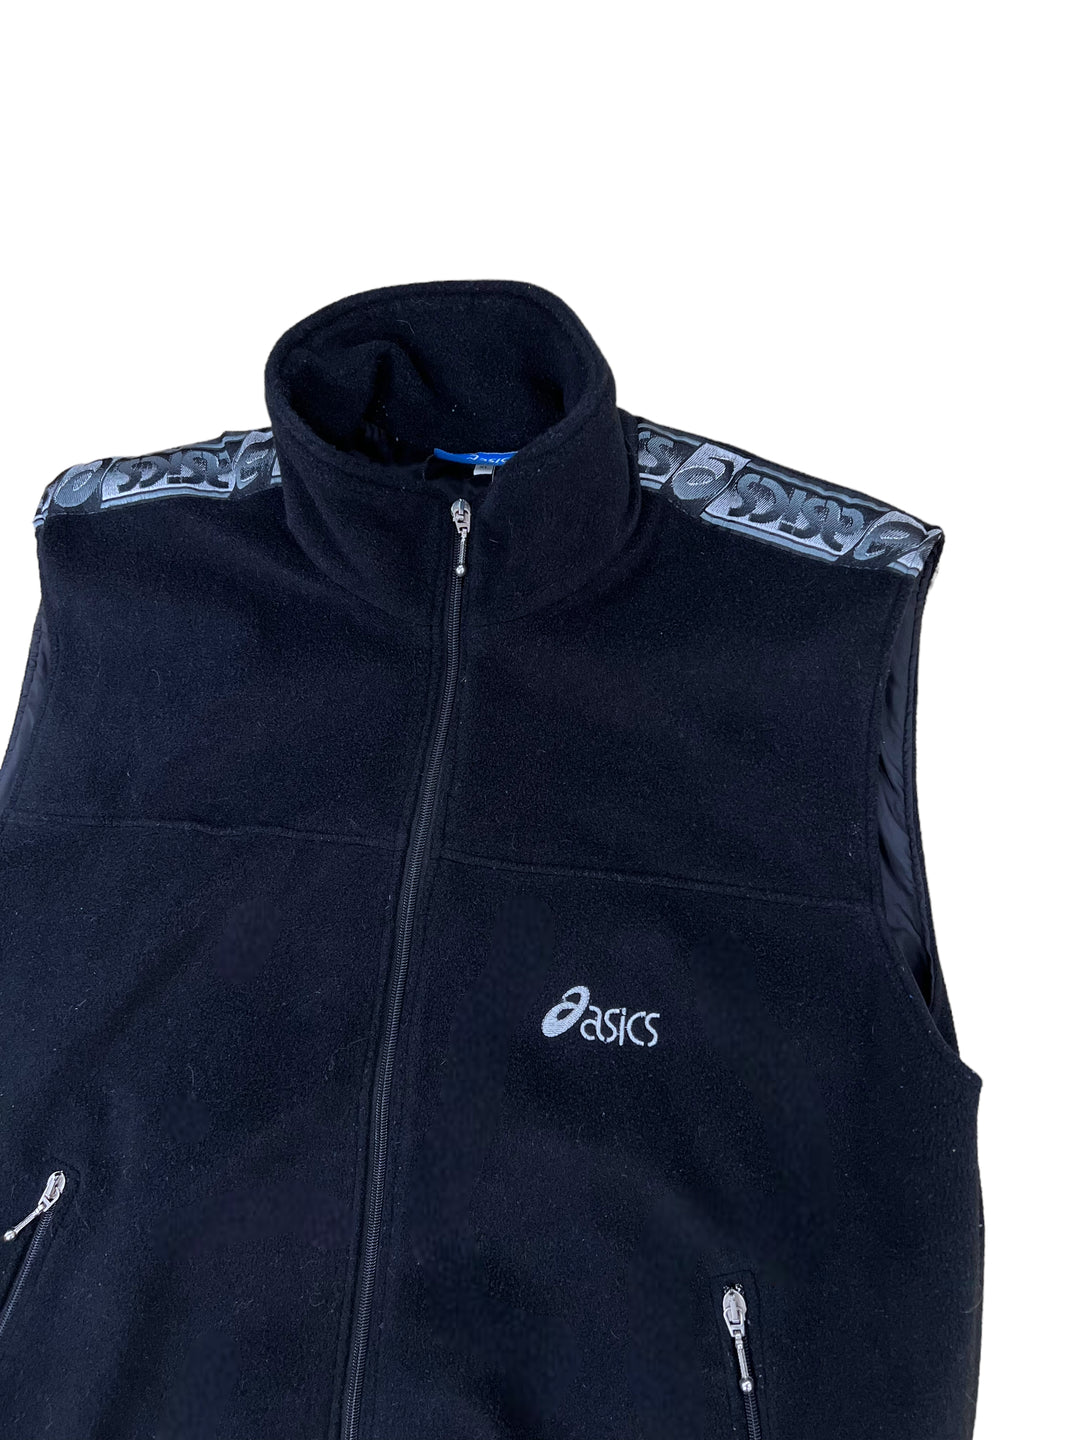 Asics Fleece Vest Jacket Men’s Extra Large